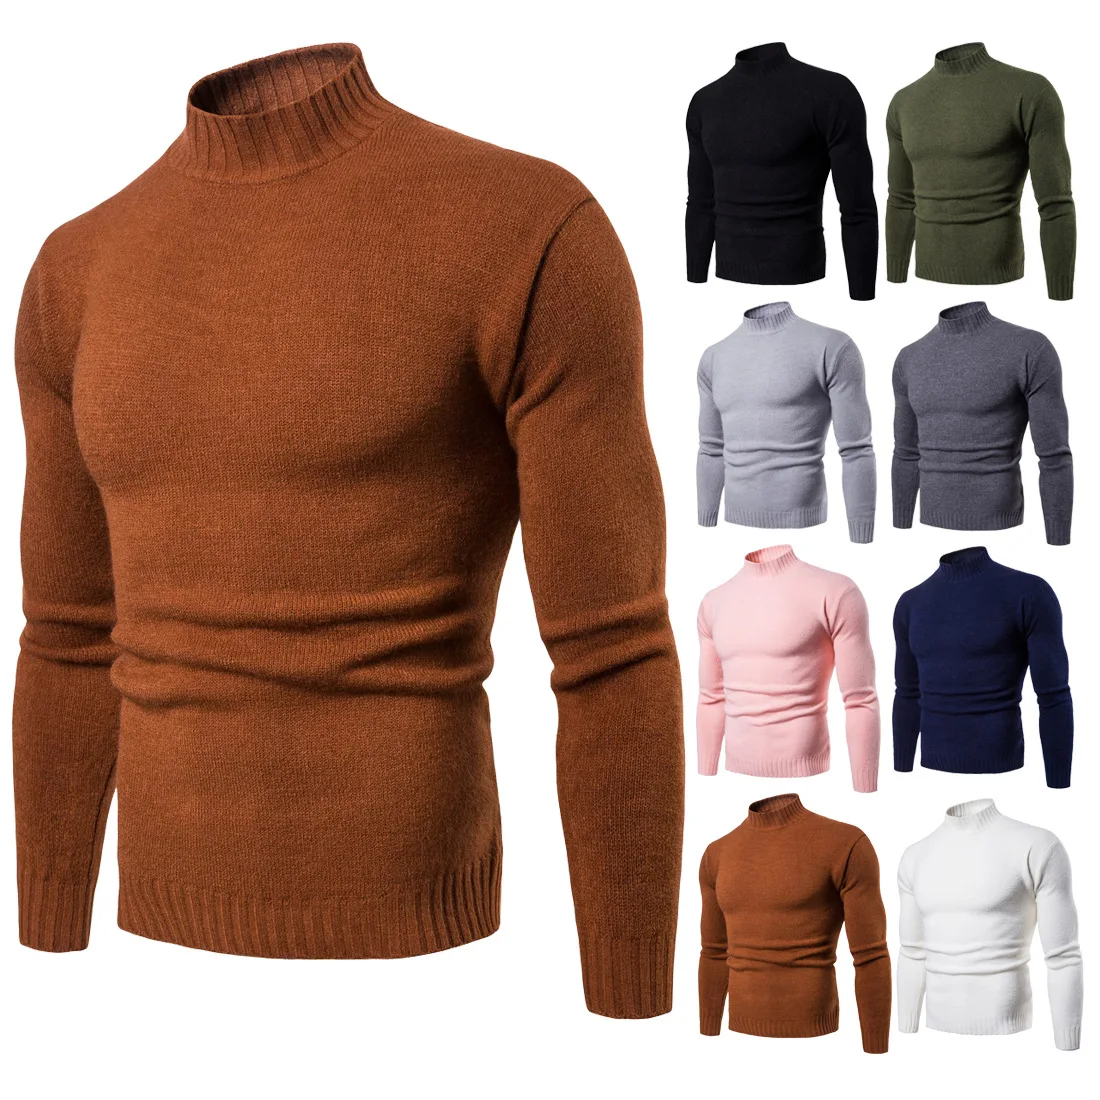 2018 осень-зима мужские пуловеры свитер вязаный эластичный свитер для повседневной носки модные тонкие Плотная вязаный свитер водолазка